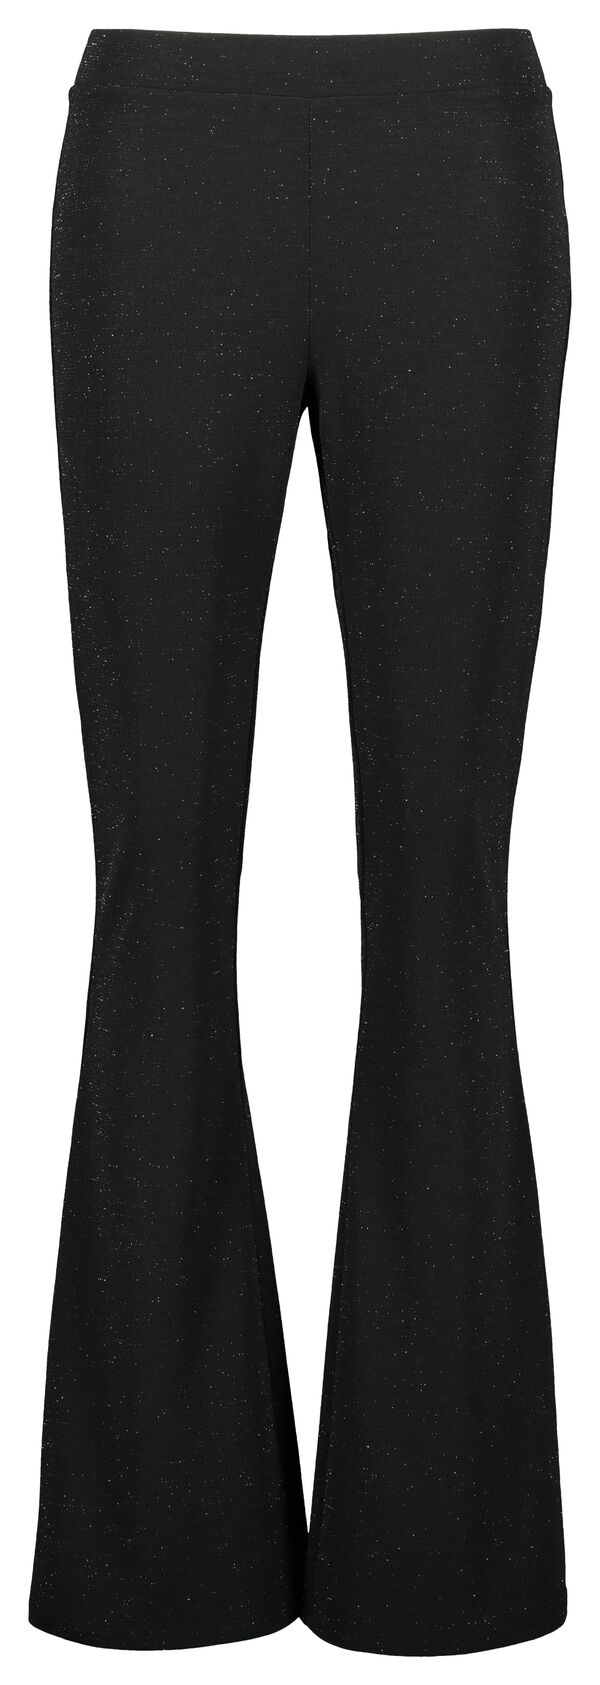 pantalon femme patte déléphant paillettes noir noir - 1000021698 - HEMA